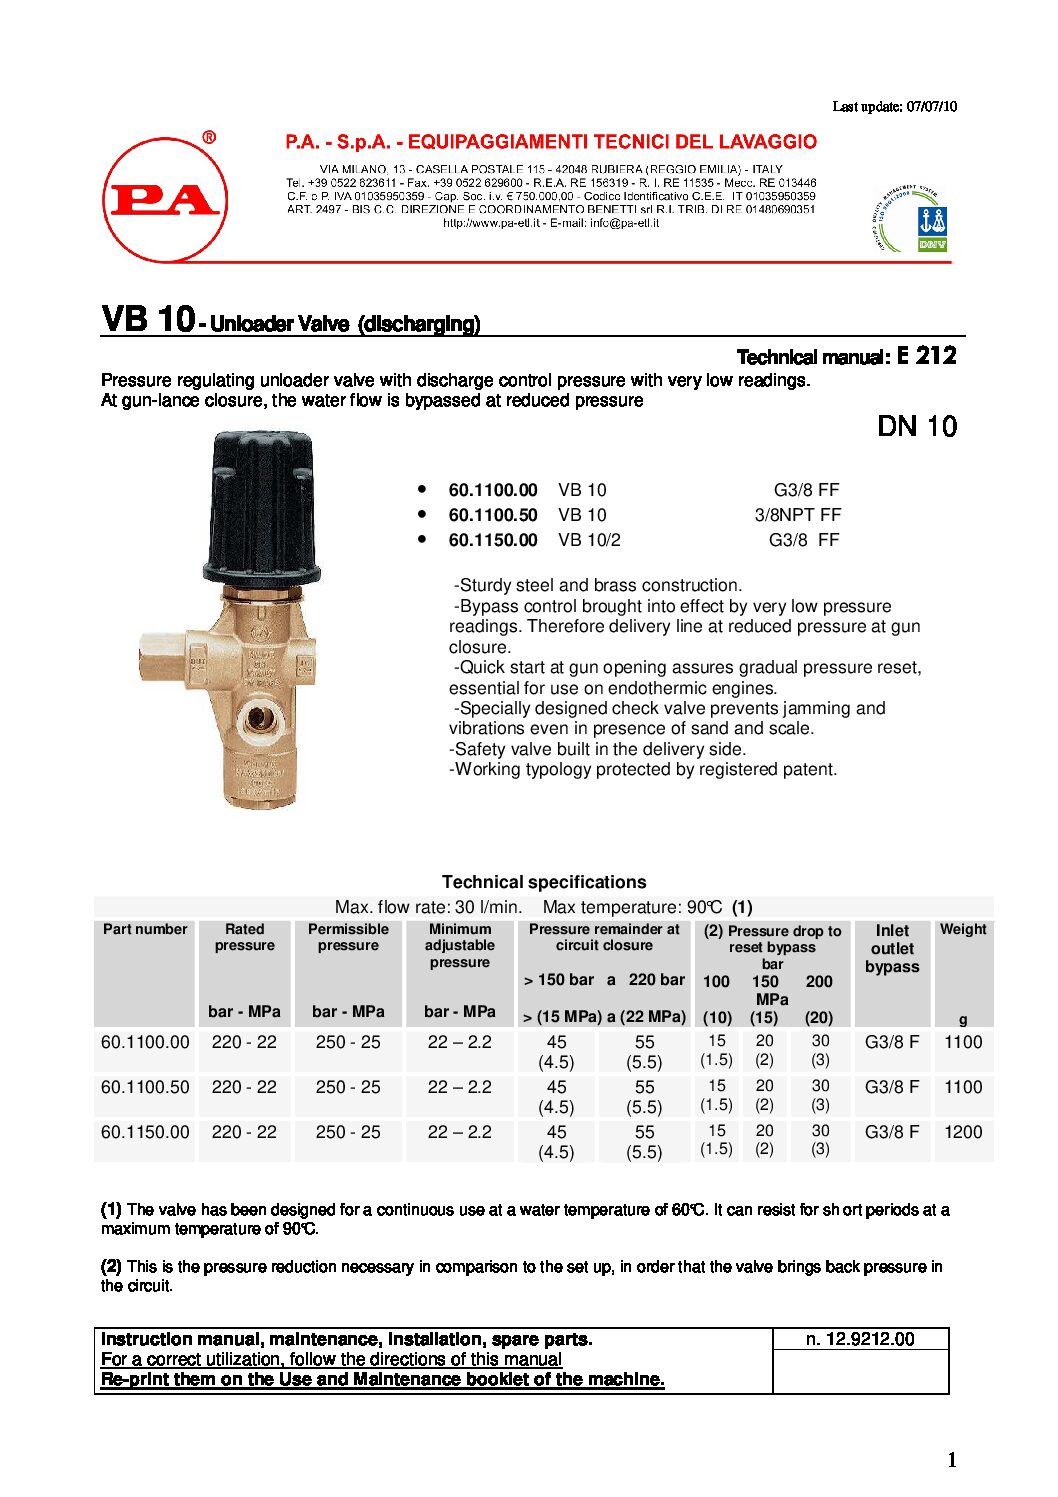 PA VB10 Unloader technical manual